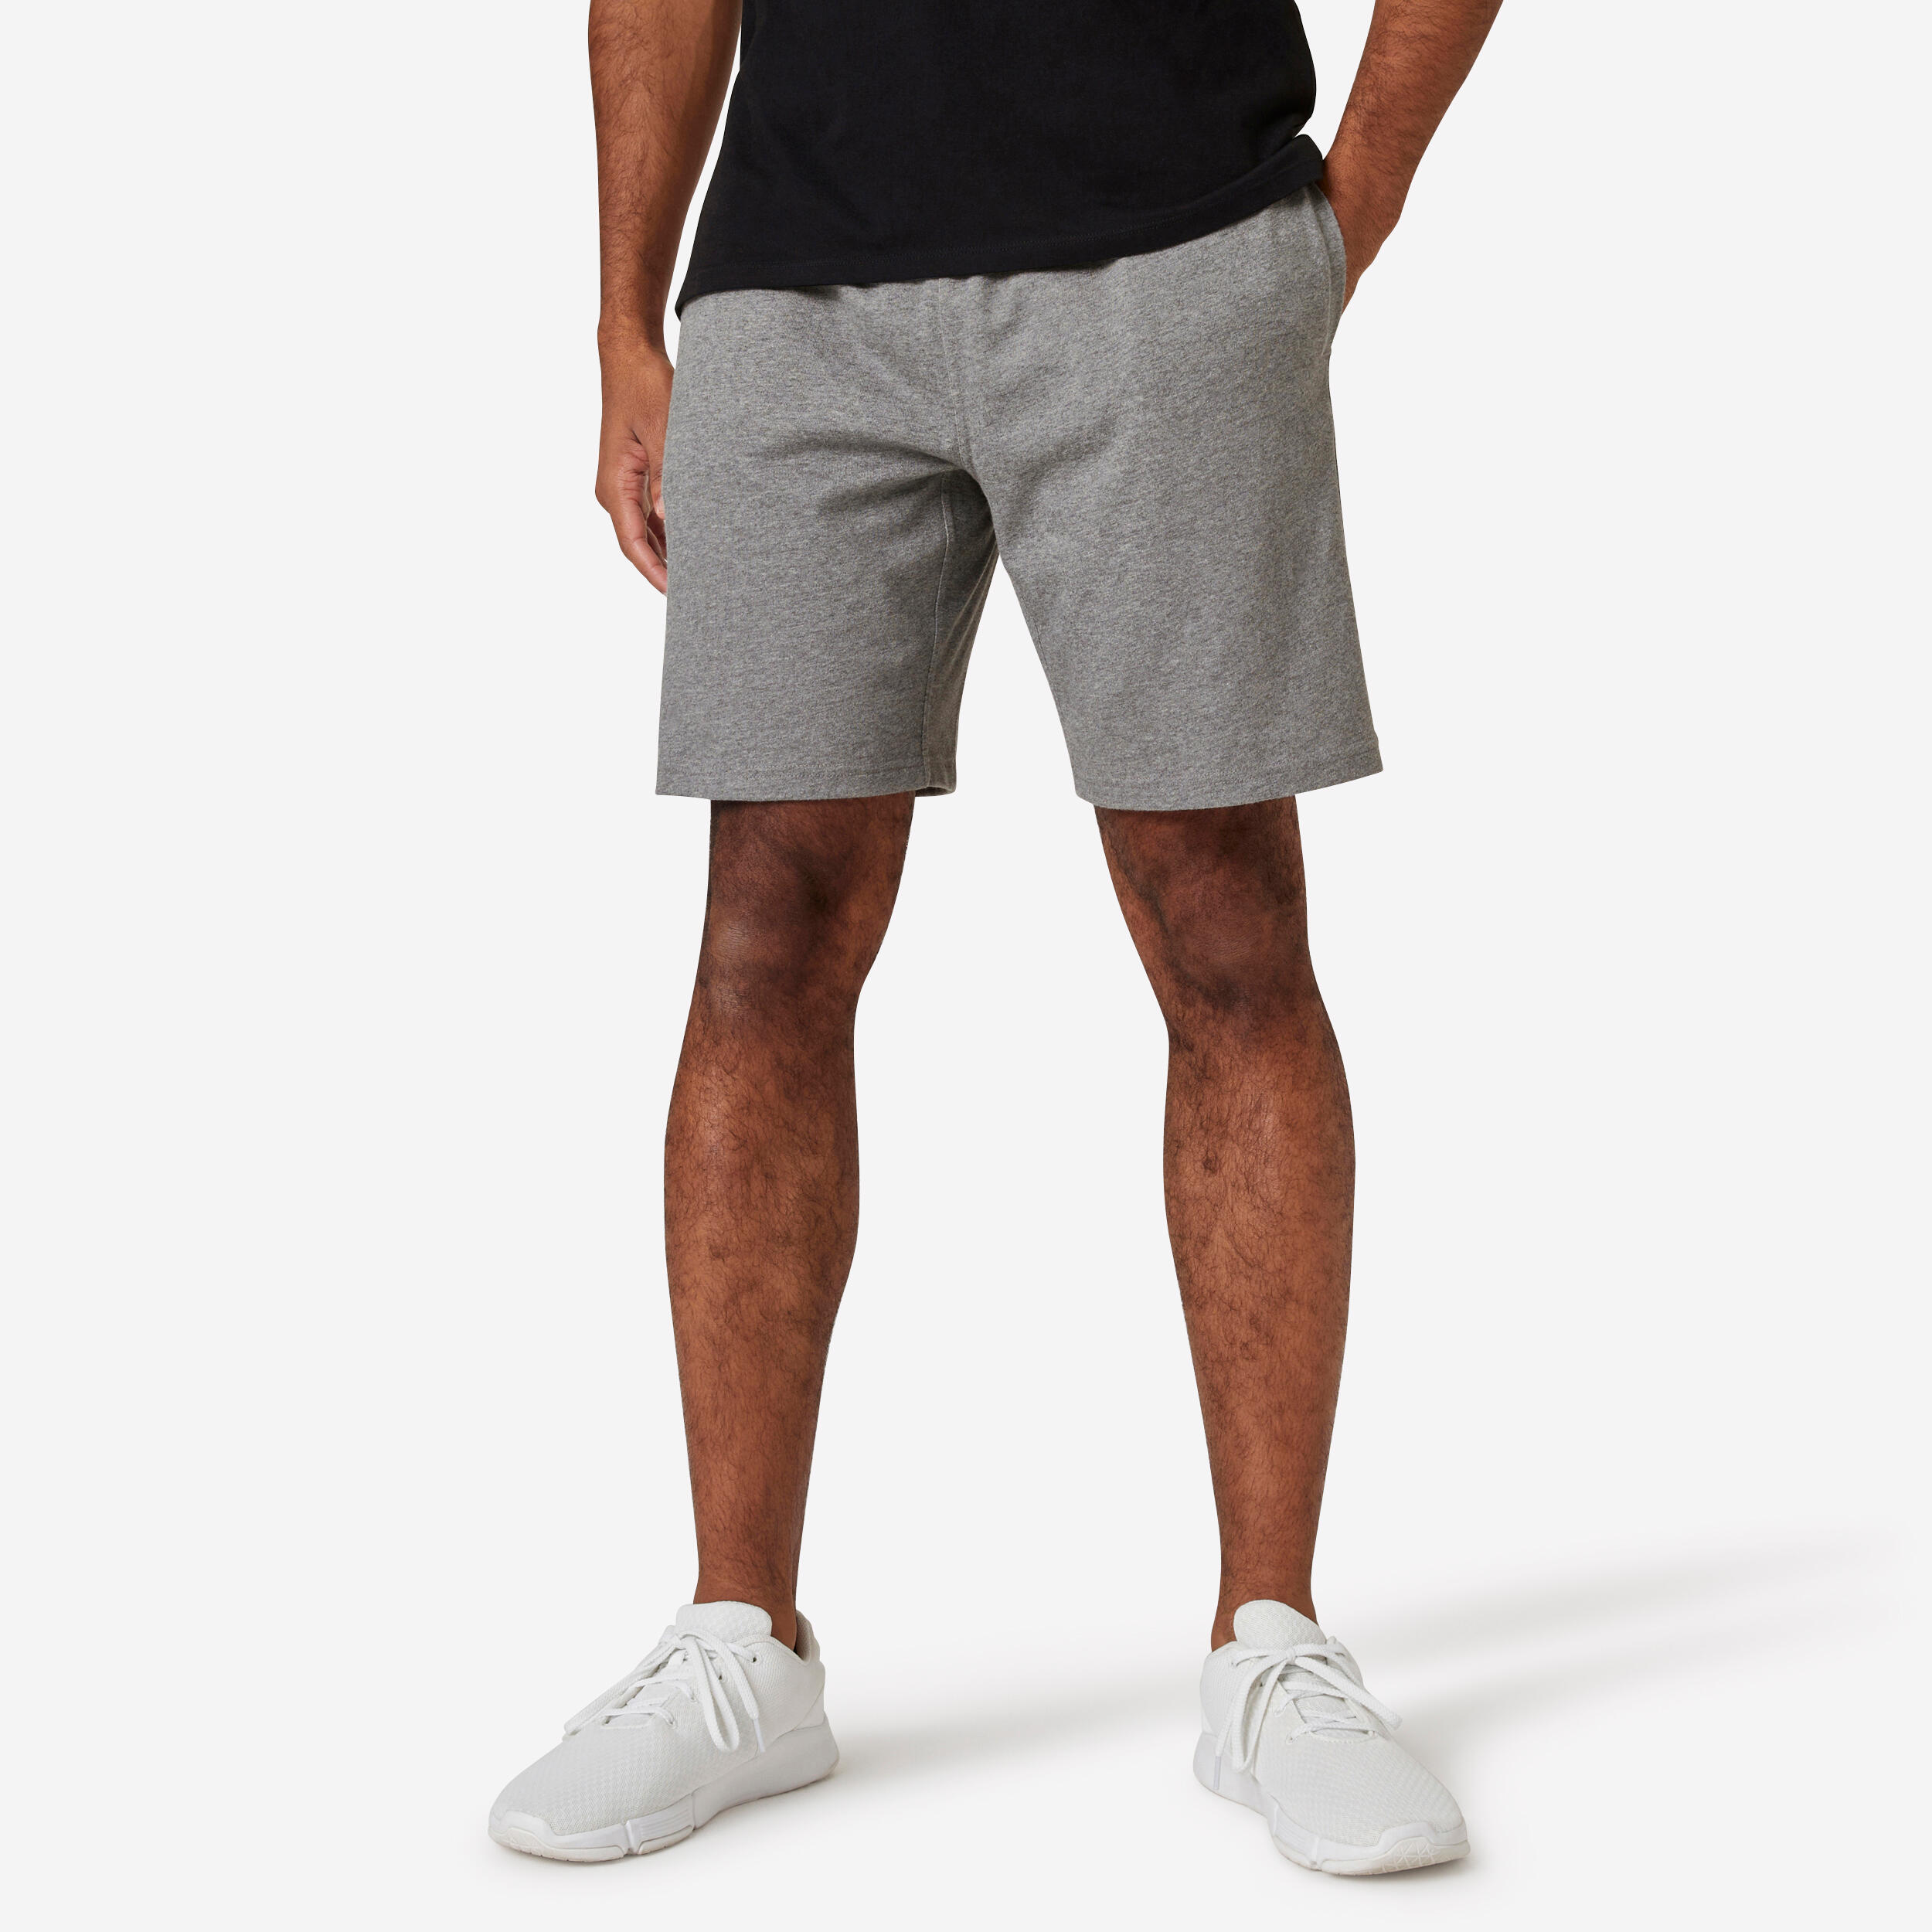 Visita lo Store di Amazon EssentialsEssentials Pantaloncini Elasticizzati con vestibilità Classica Uomo 